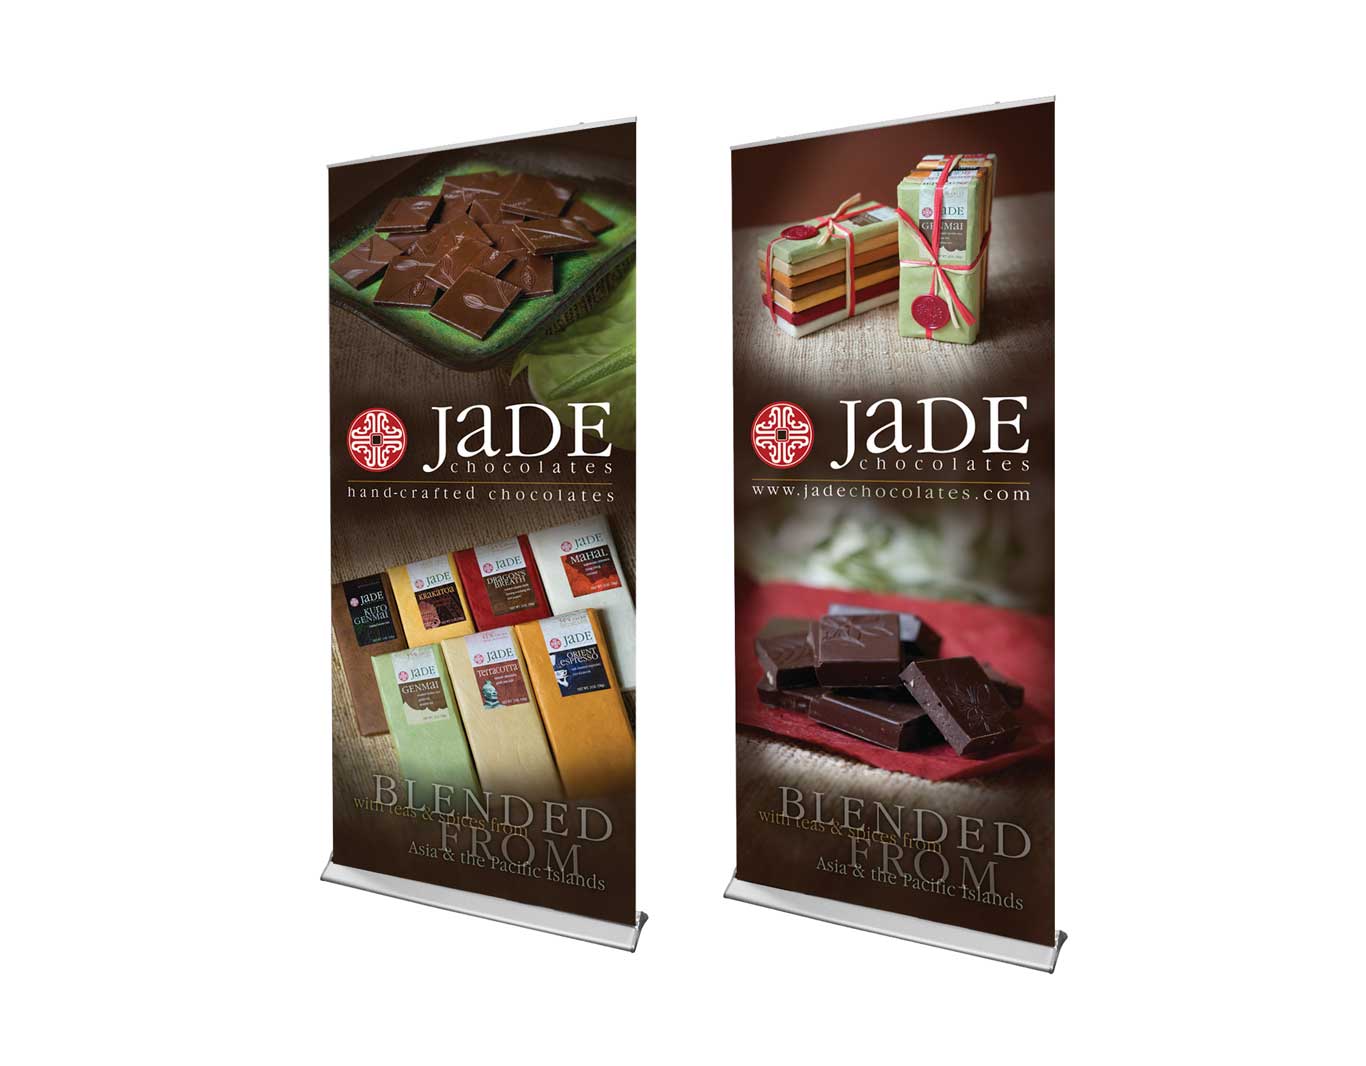 Trade Show- Jade Chocolates